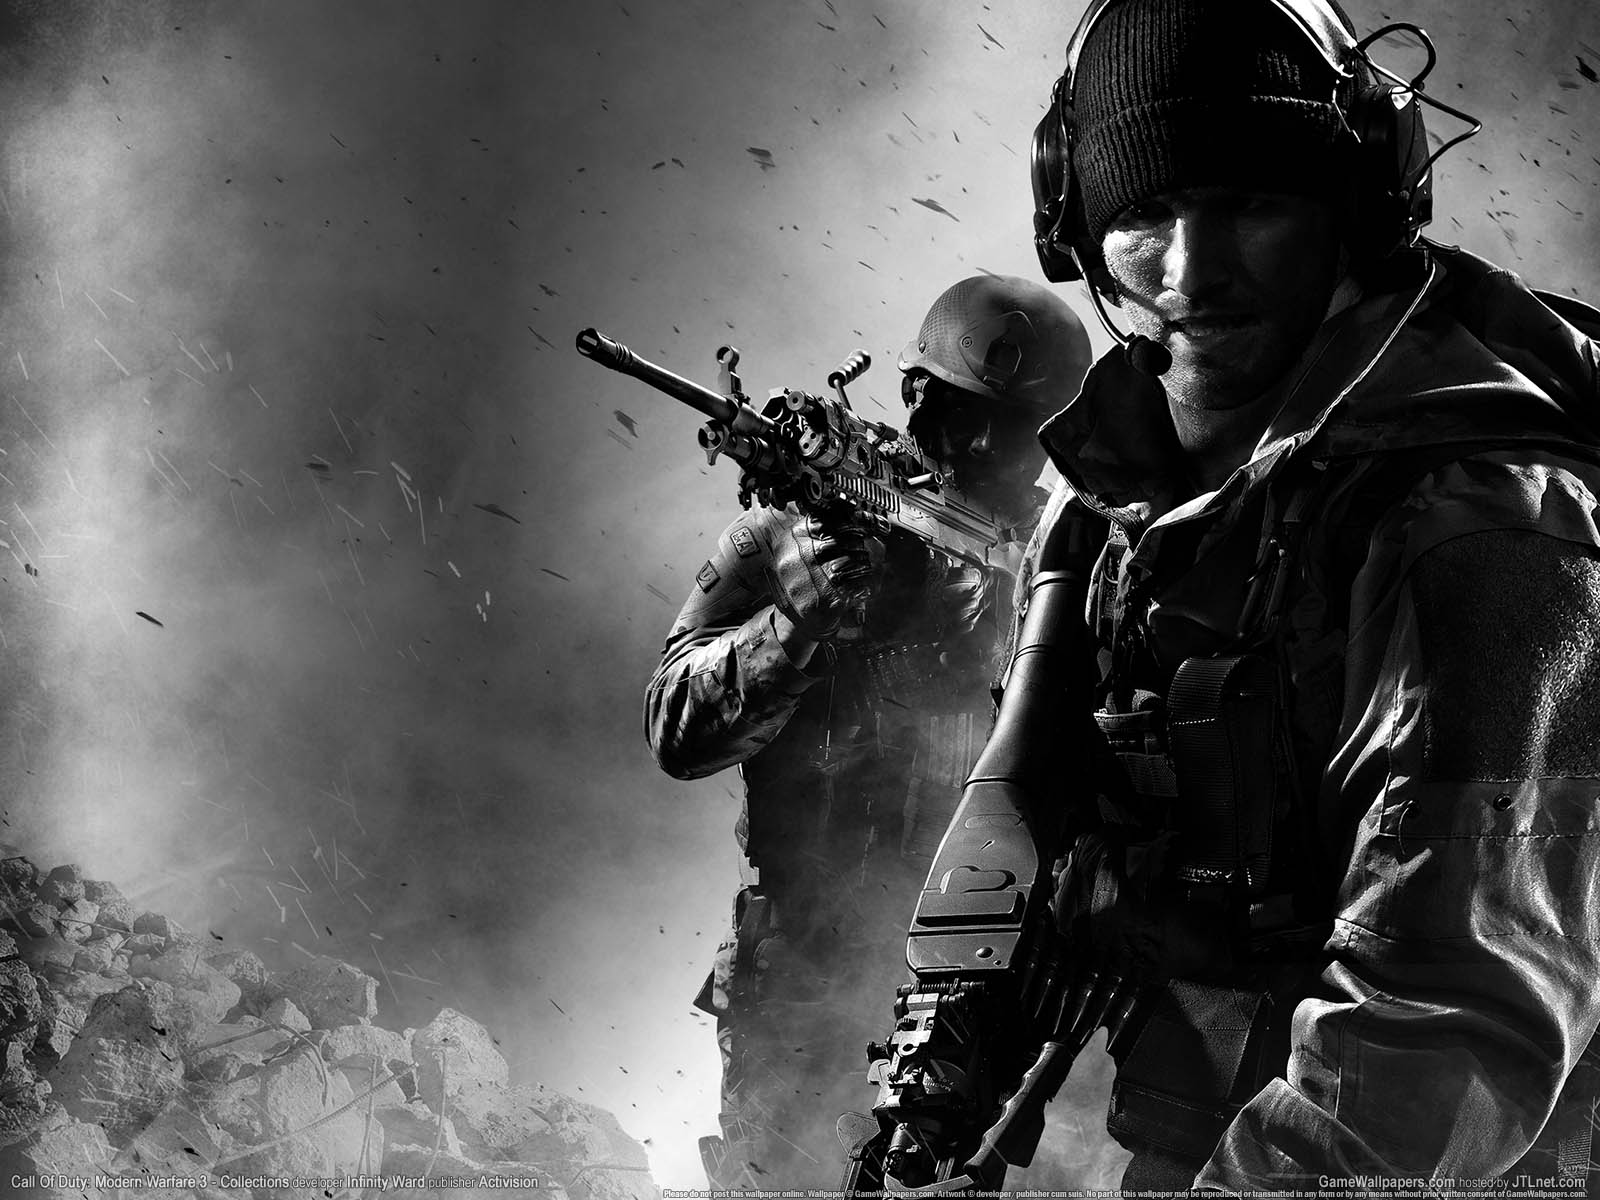 Call Of Duty: Modern Warfare 3 - Collections fond d'cran 01 1600x1200